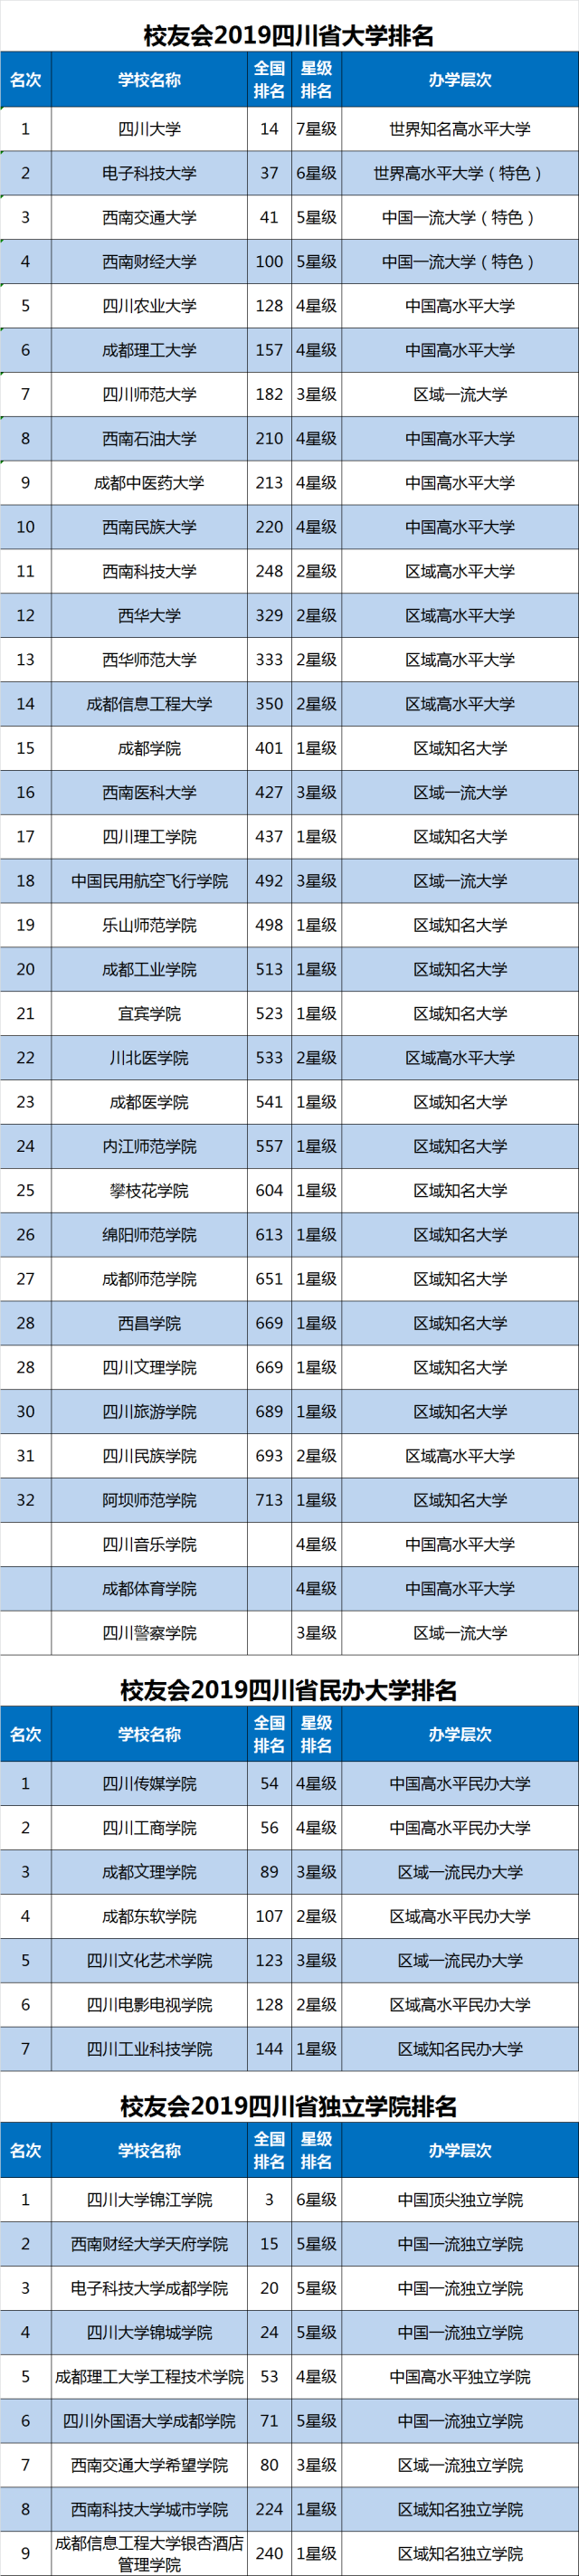 校友会2019四川省大学排名,四川大学第1,电子科技大学